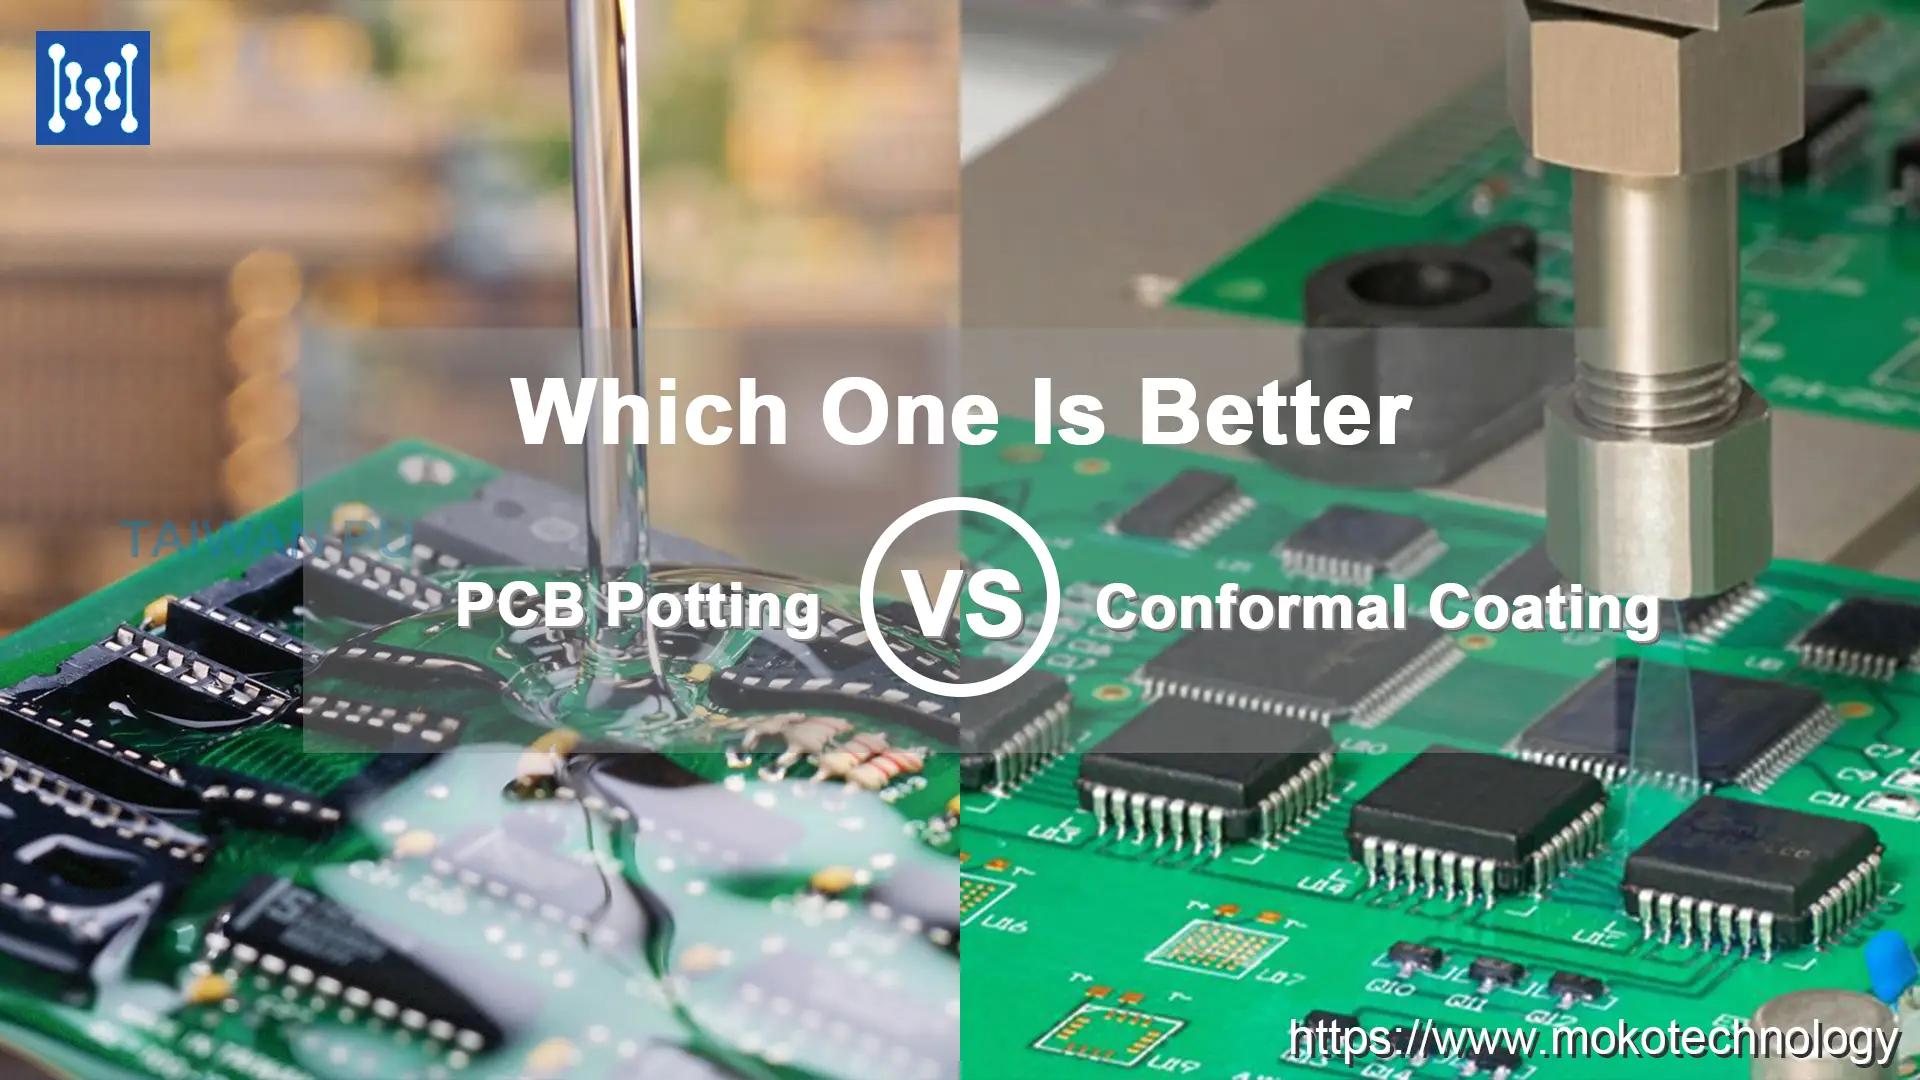 PCB Potting vs. Conformal Coating